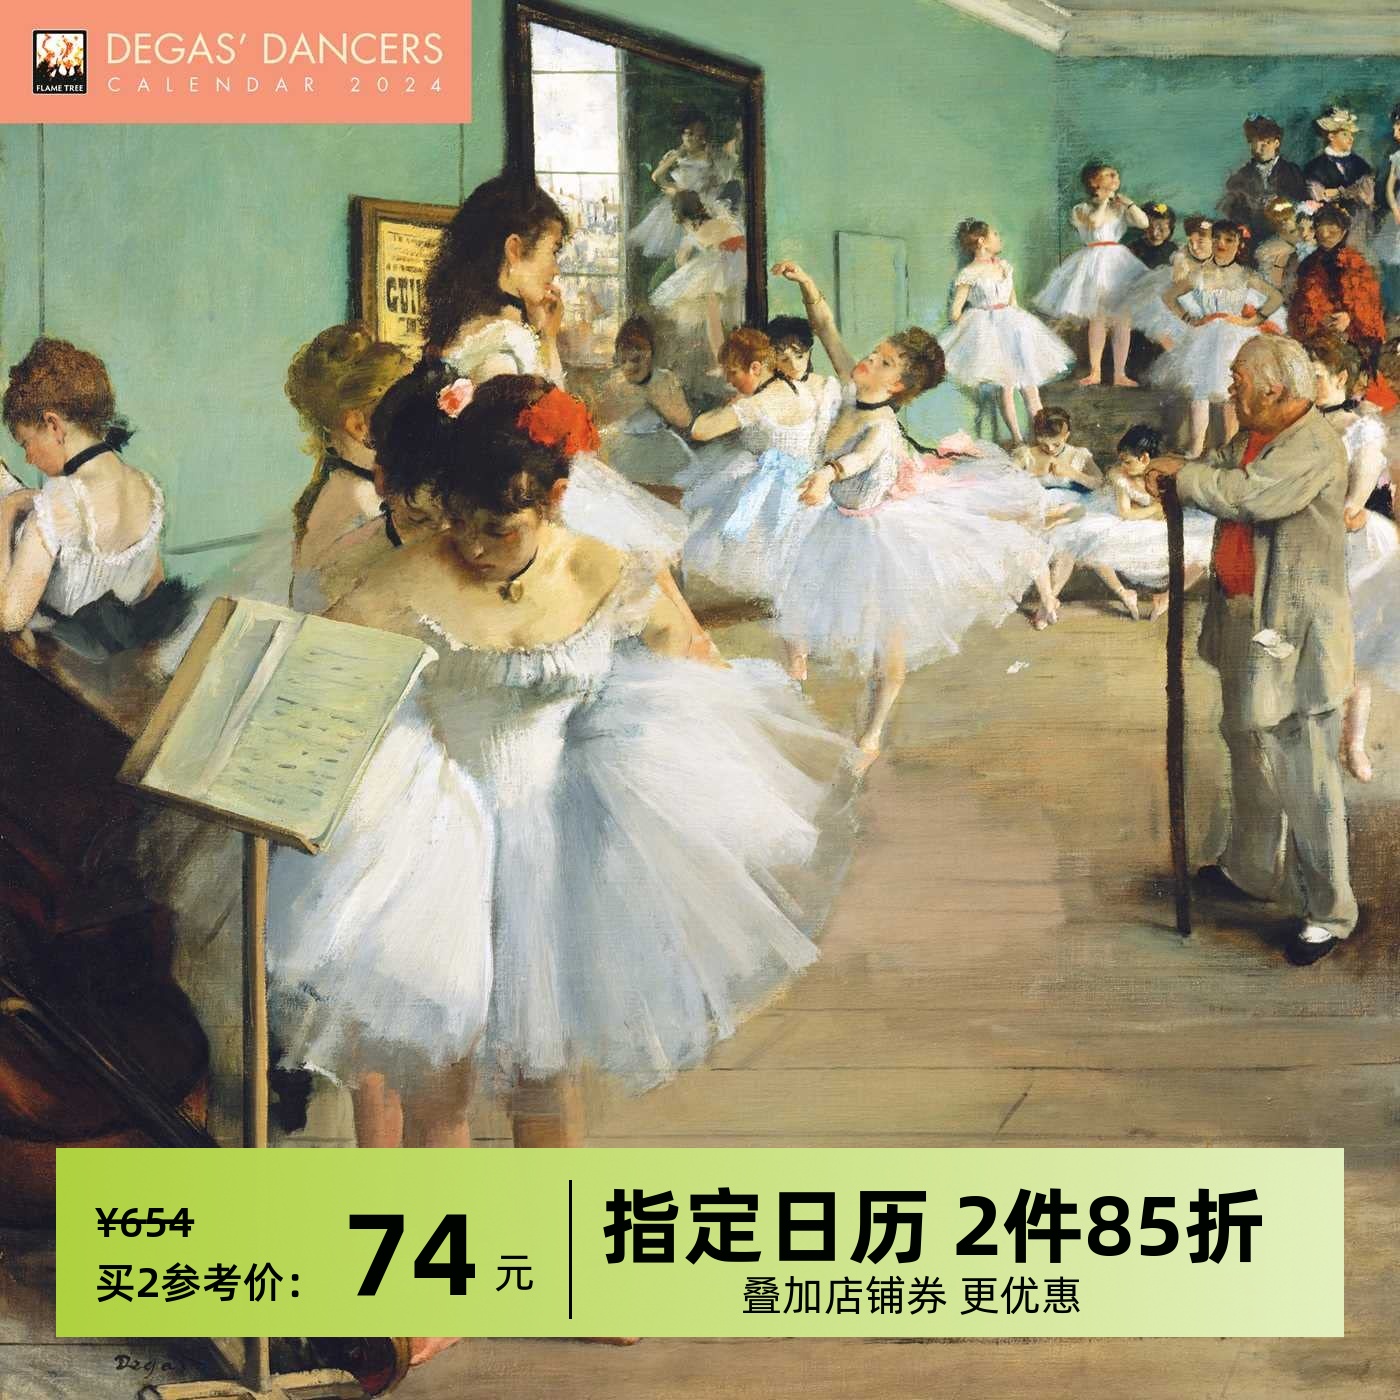 现货 埃德加·德加 芭蕾舞者 2024年挂历 印象派 英文原版 进口艺术日历 Degas' Dancers Wall Calendar 2024 (Art Calendar)